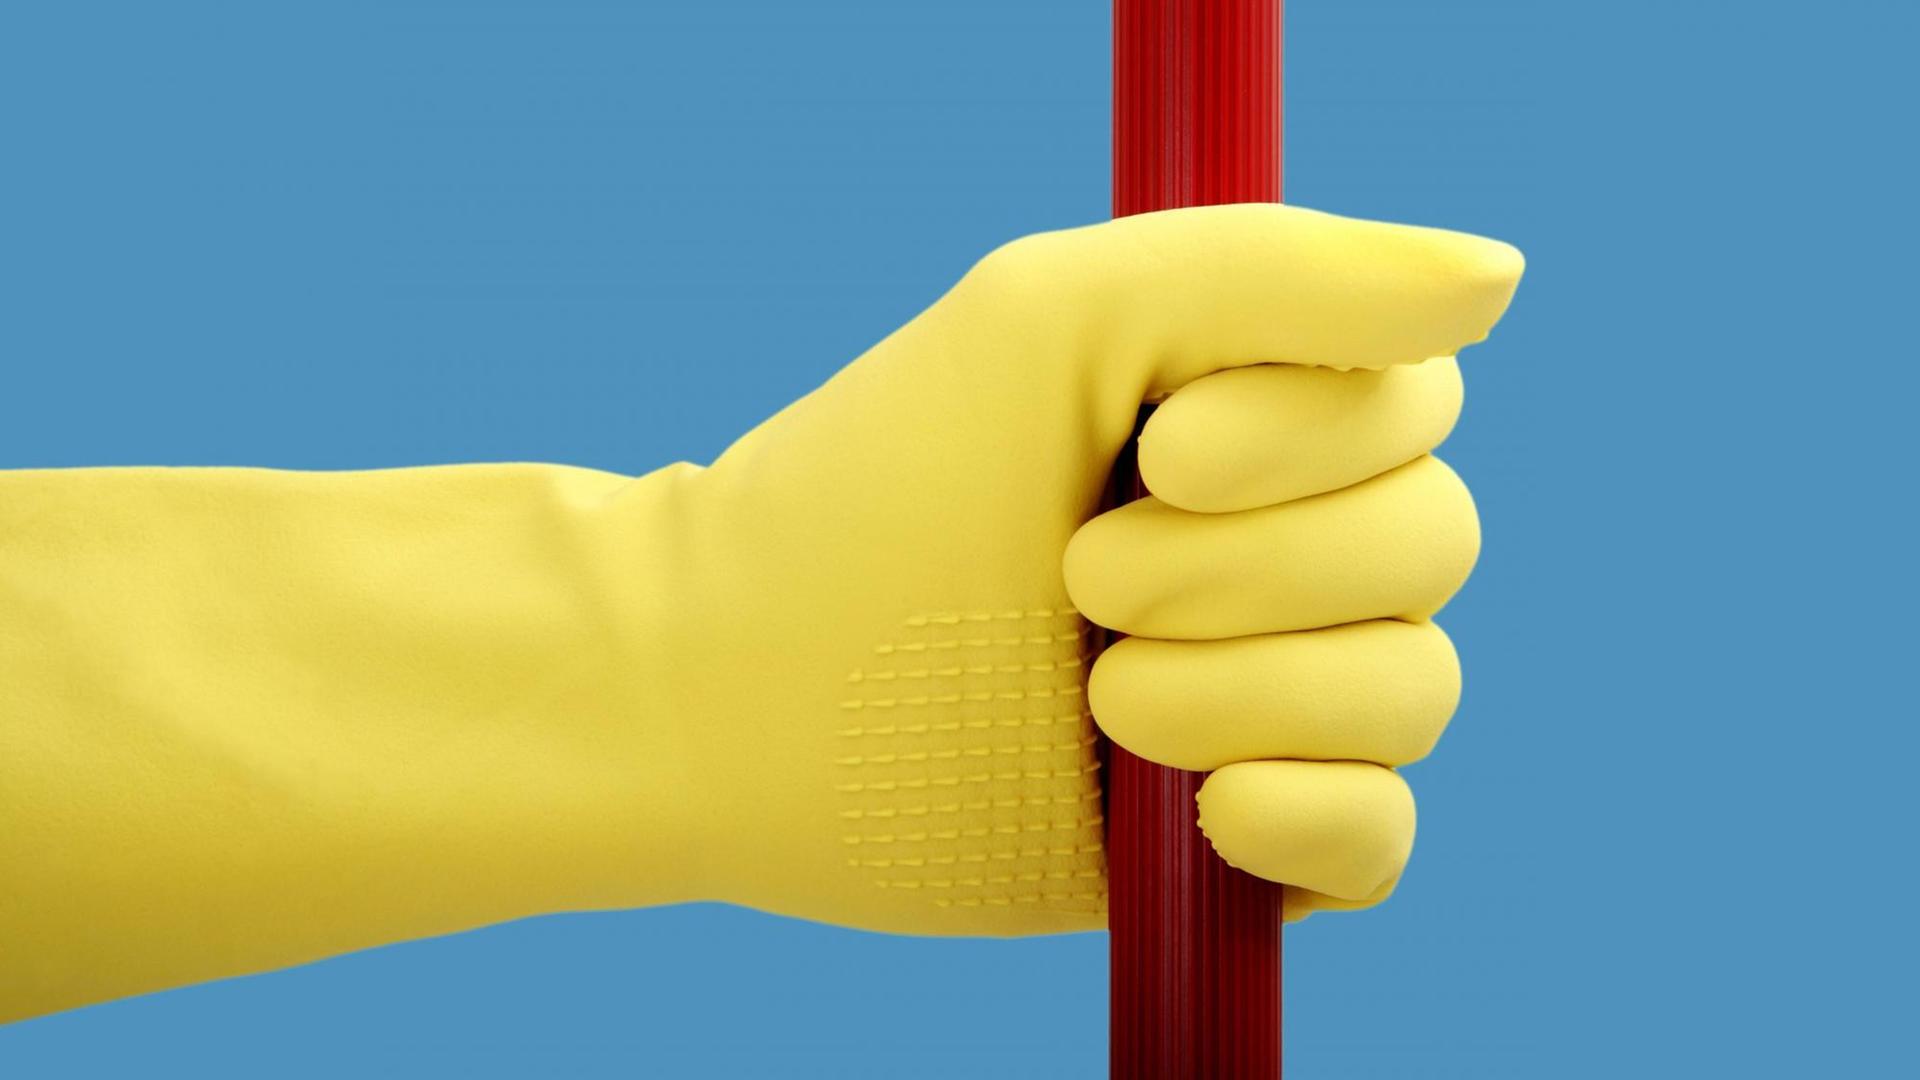 Eine Hand mit Gummihandschuh hält eine rote Stange